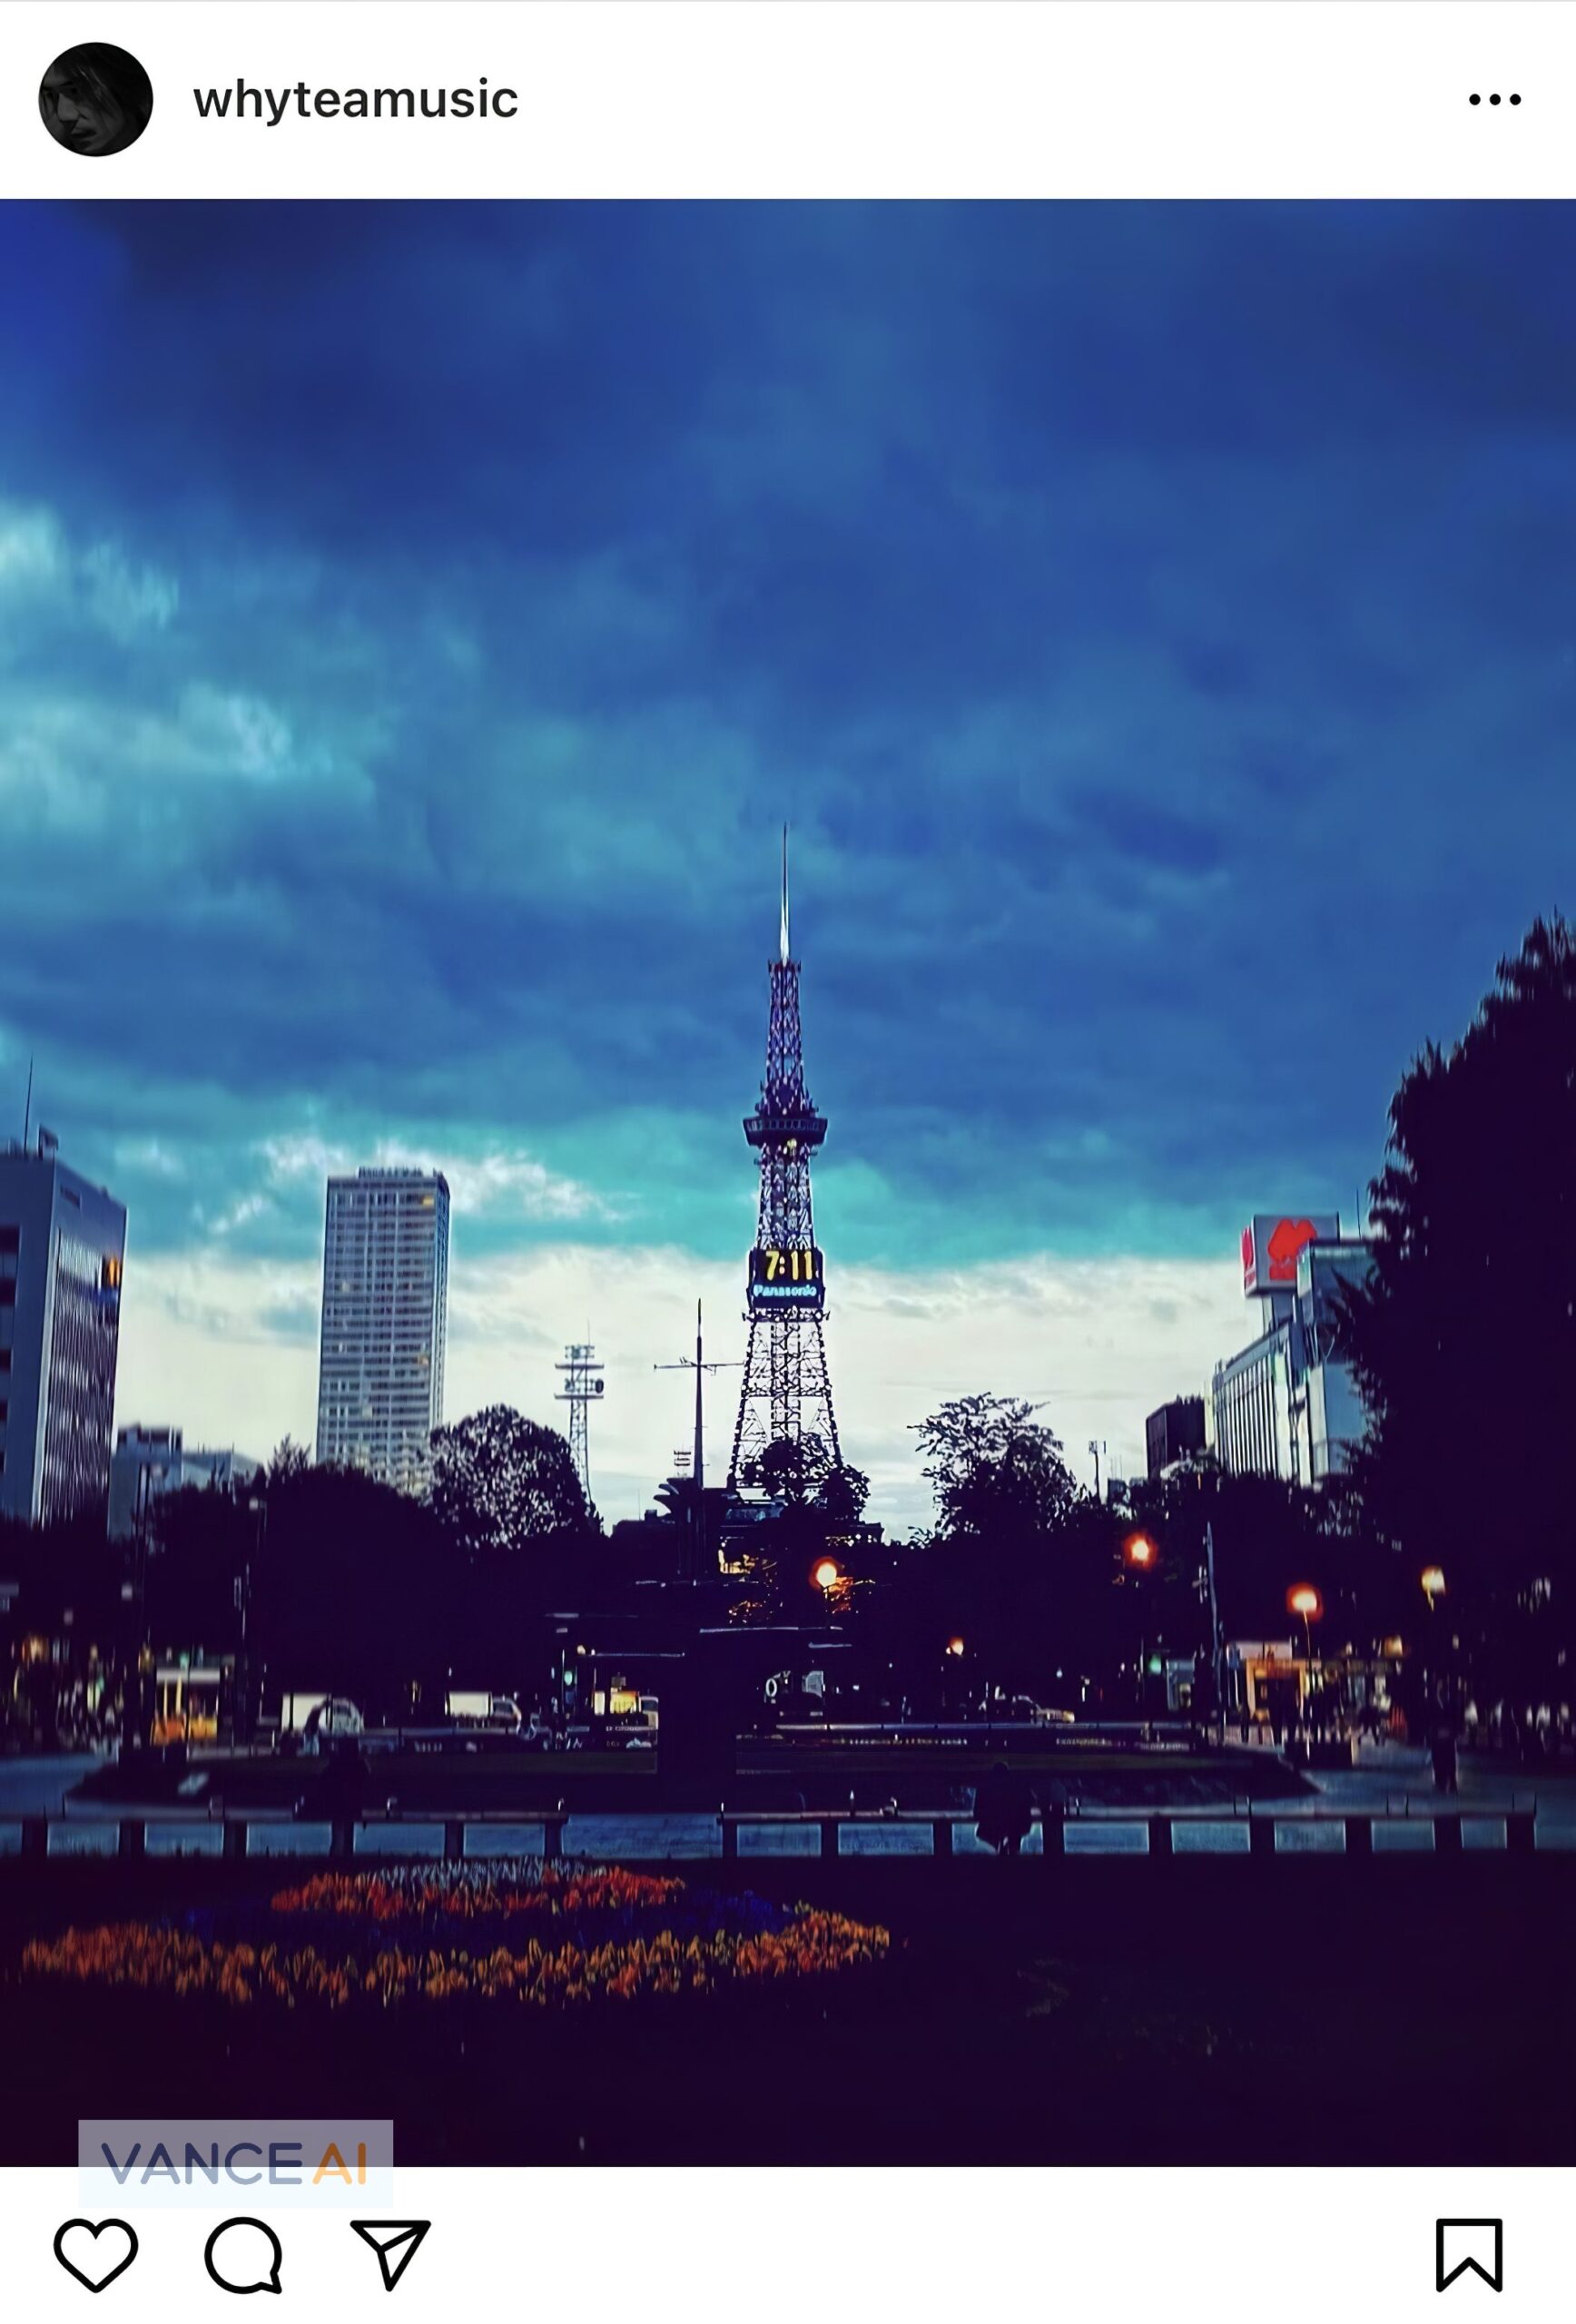 Yukihide "YT" Takiyamaがさっぽろテレビ塔を撮影した写真